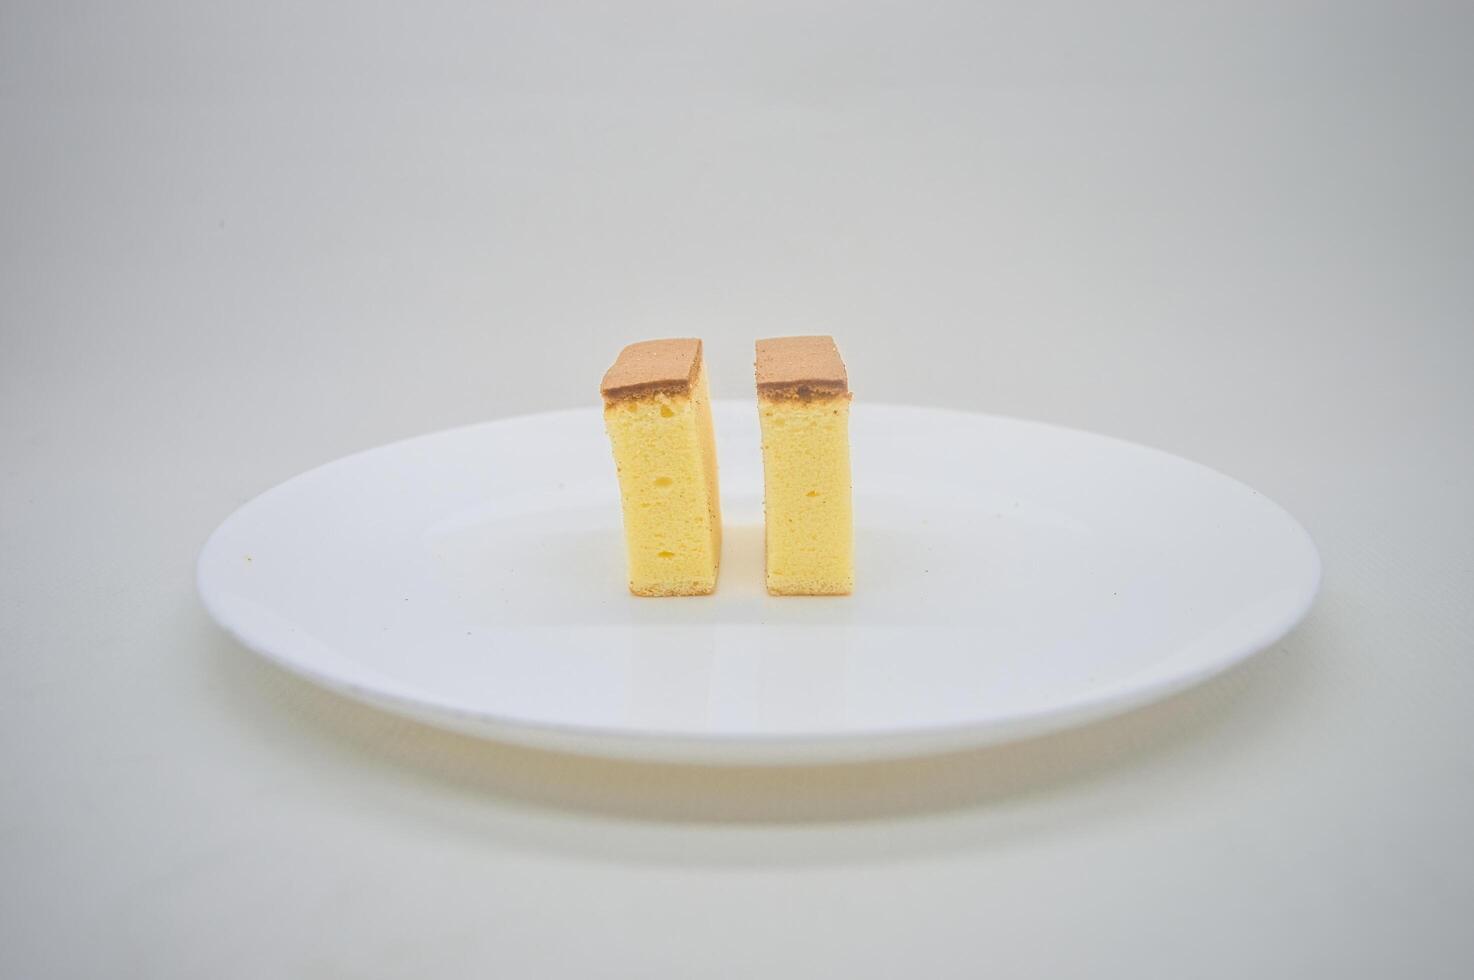 deux tranches de fromage gâteau sur une blanc assiette avec une plaine Contexte photo